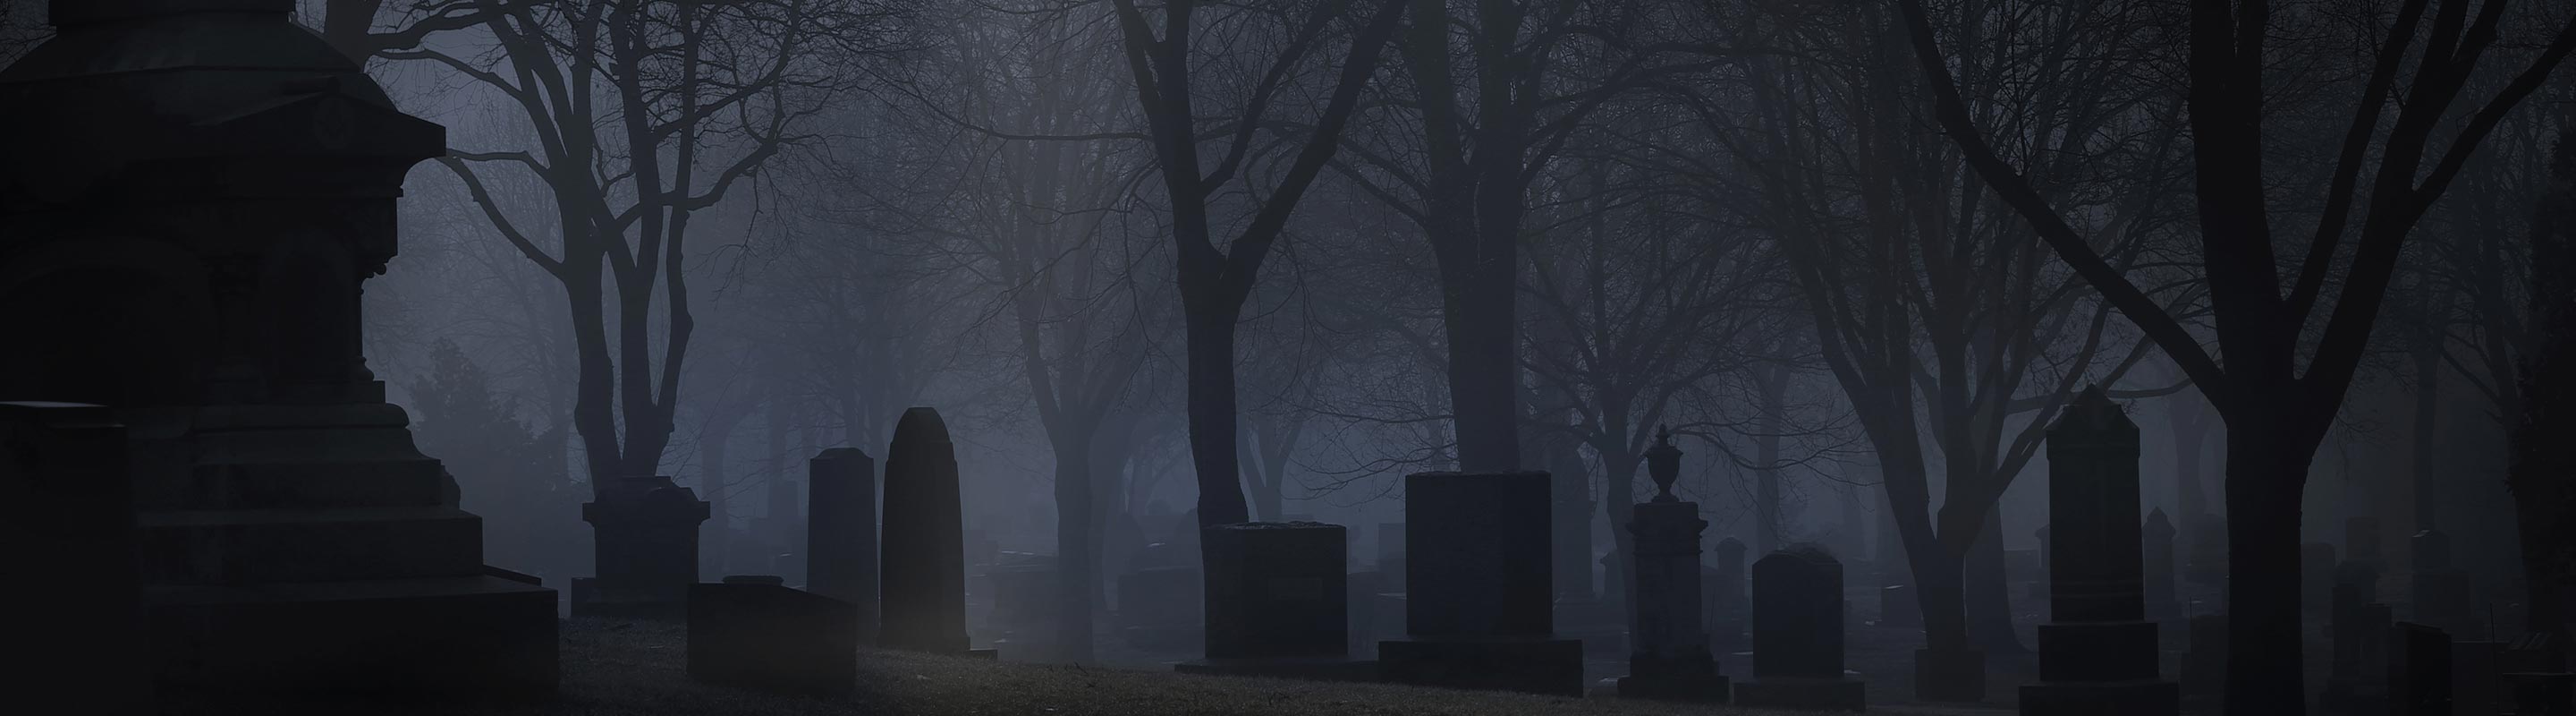 Uno de los cementerios embrujados que visitamos en nuestros Tours de Fantasmas Grupales